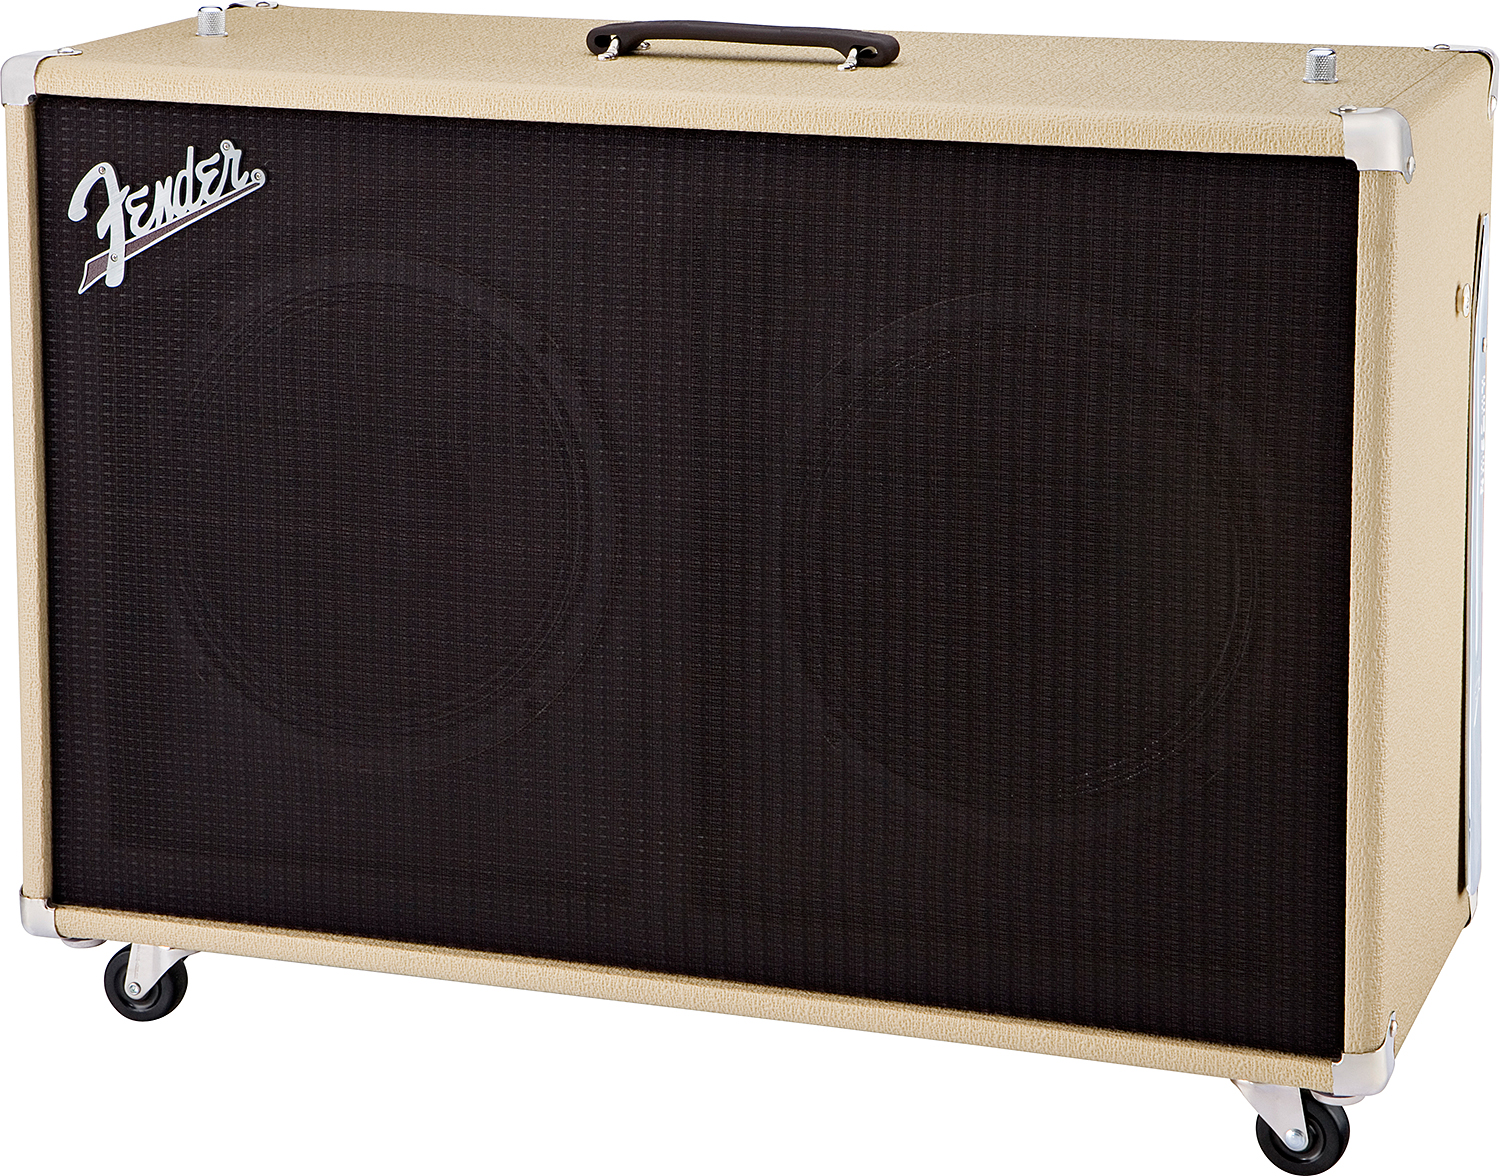 Fender Super Sonic 60 212 Enclosure 2x12 120w Blonde - Cabina amplificador para guitarra eléctrica - Variation 1